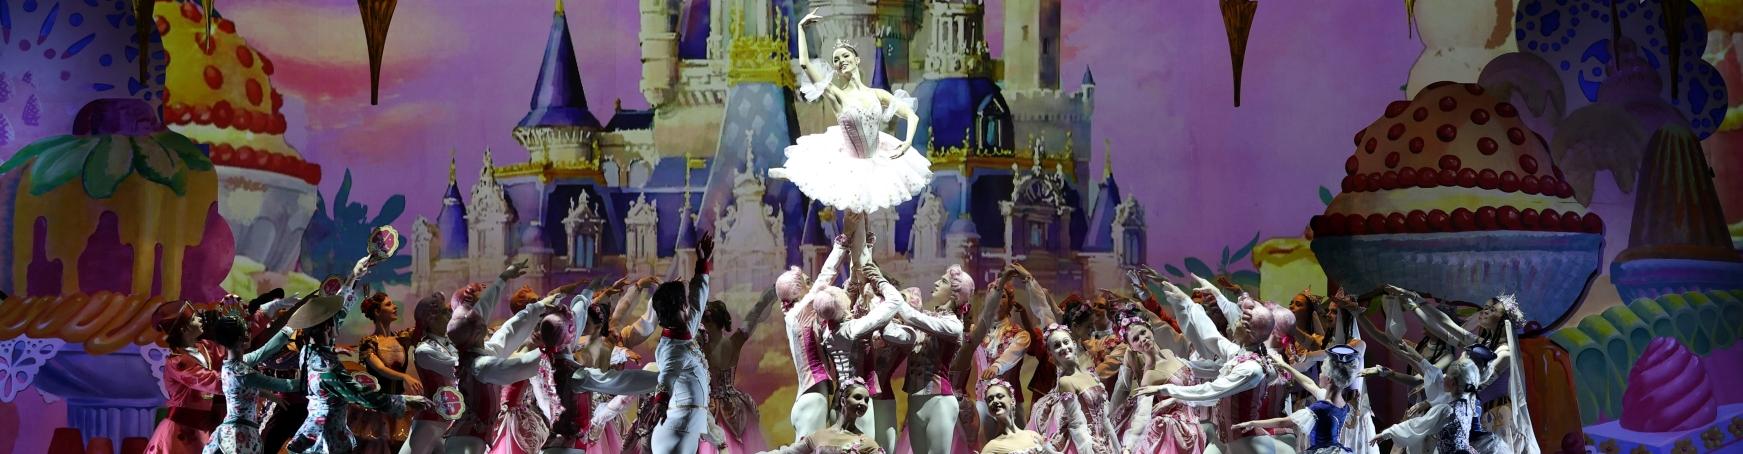 Премьера балета «Щелкунчик» Николая Цискаридзе в Александринском театре